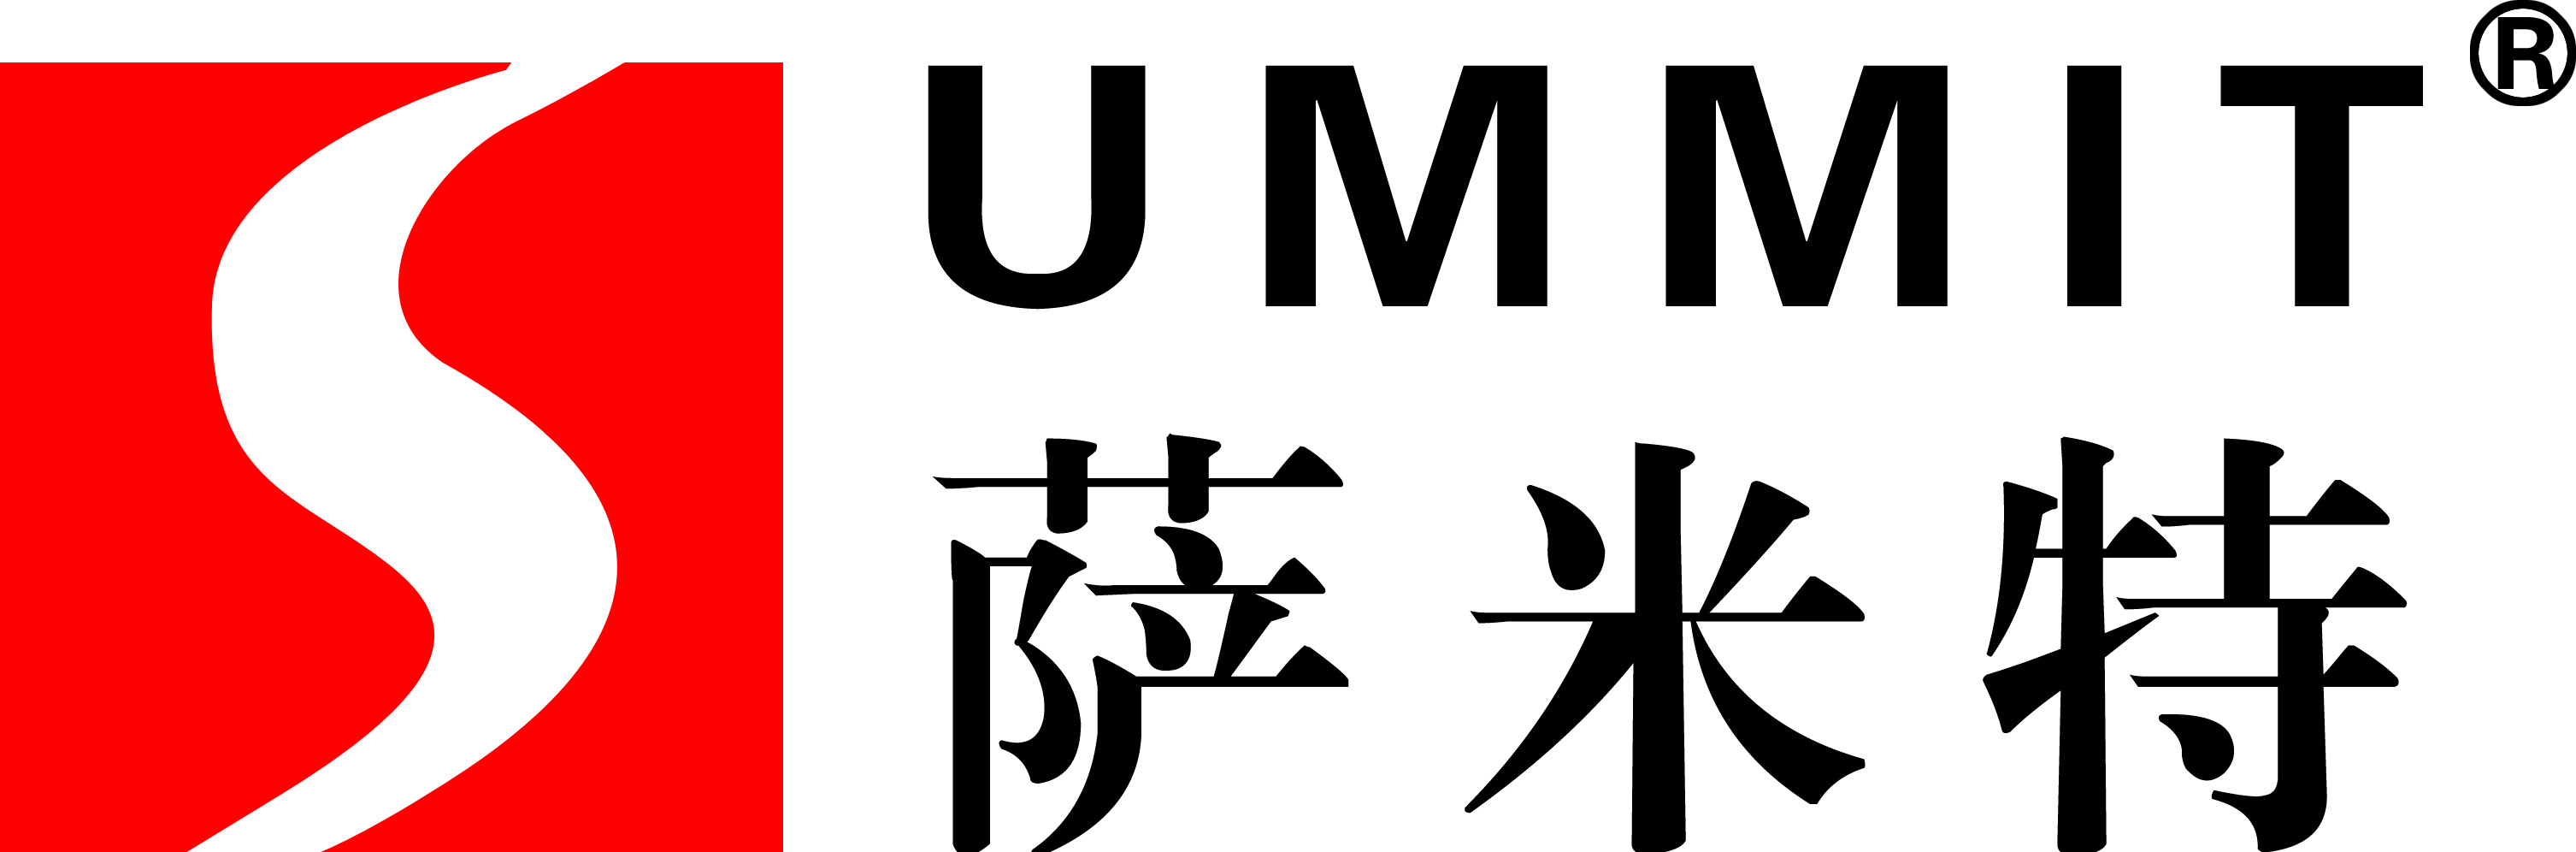 萨米特瓷砖图片logo图片